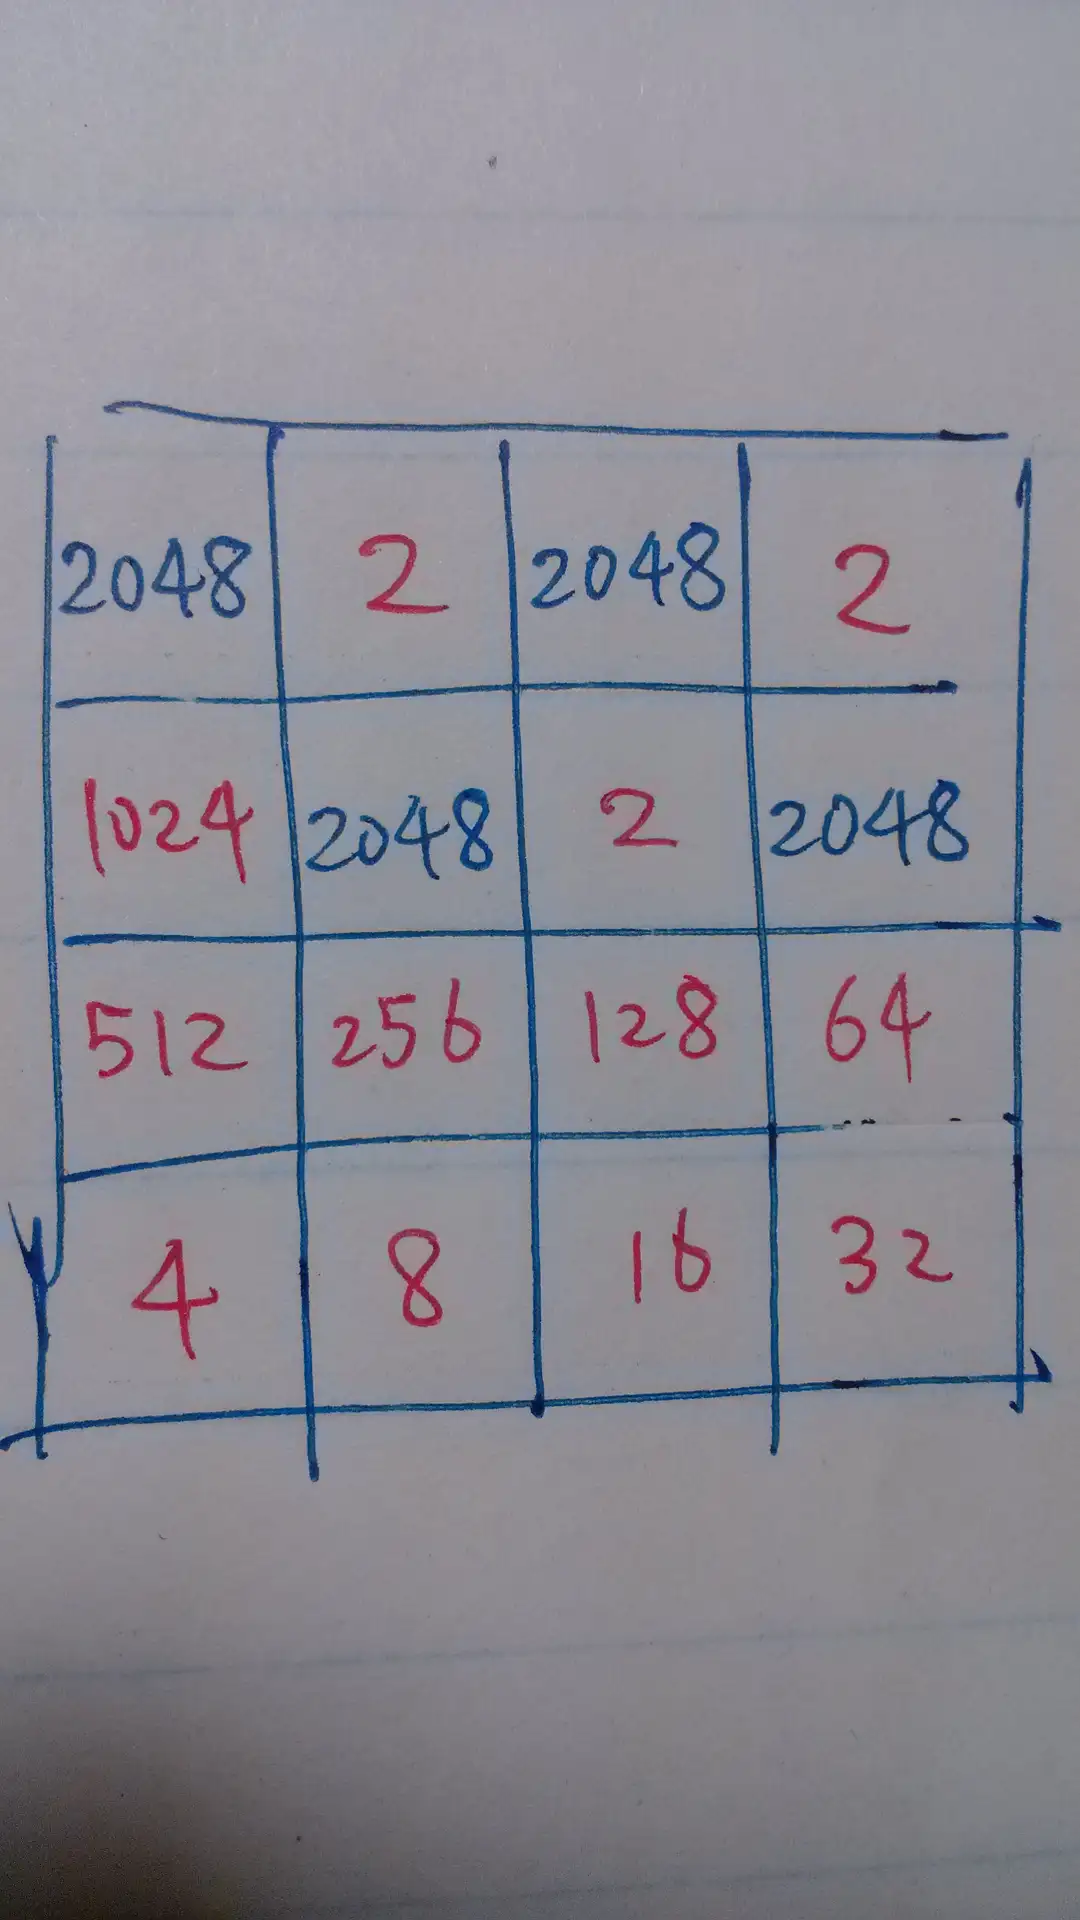 2048 é realmente o maior valor possível de ser encontrado no jogo 4x4 (16  casas)? Existe uma relação matemática entre o tamanho e o maior valor?  Qual? - Quora